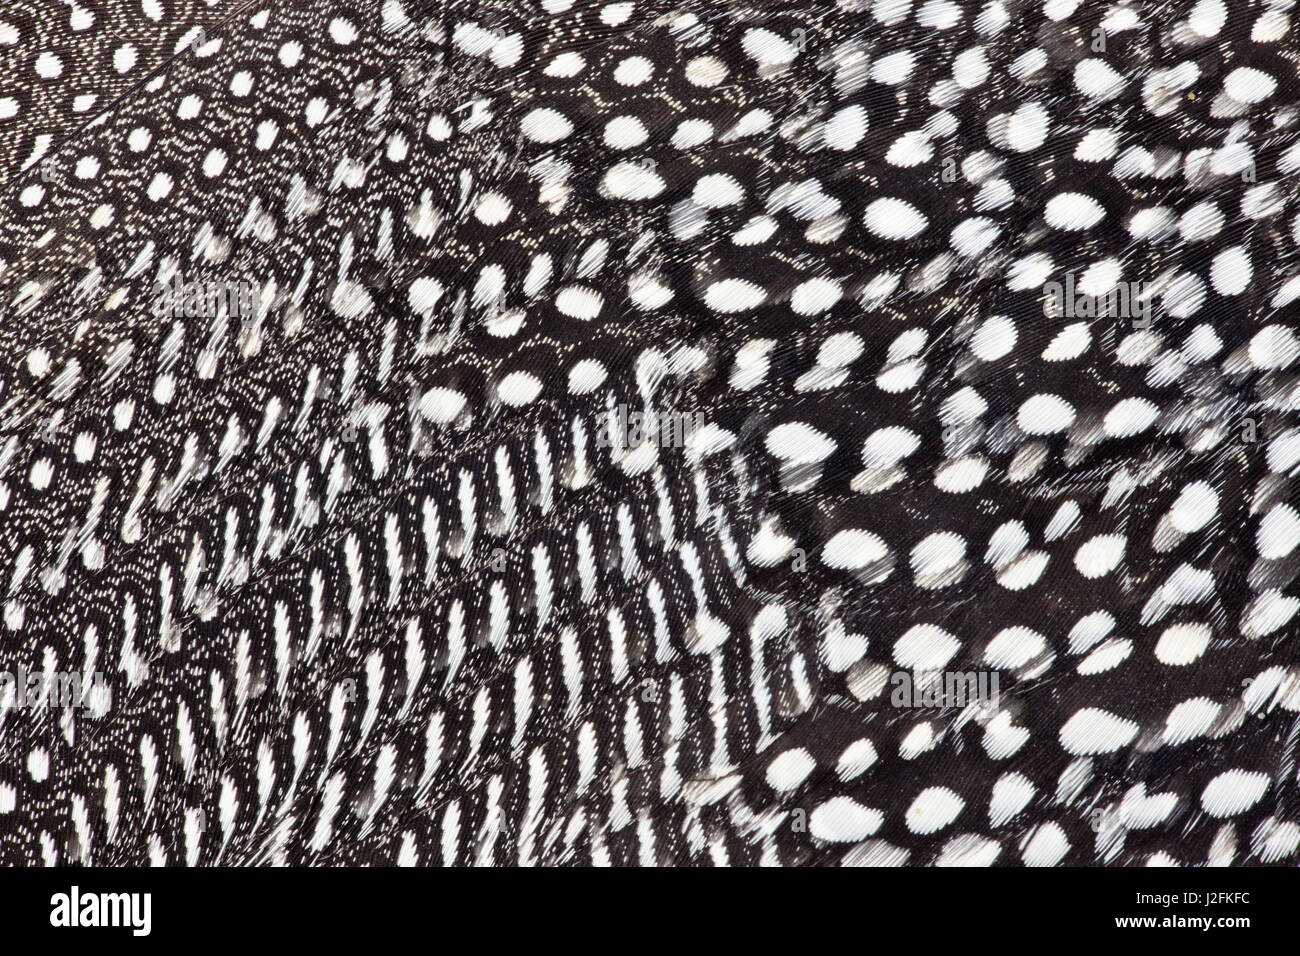 Behelmte Perlhuhn Federn in schwarz / weiß Stockfoto